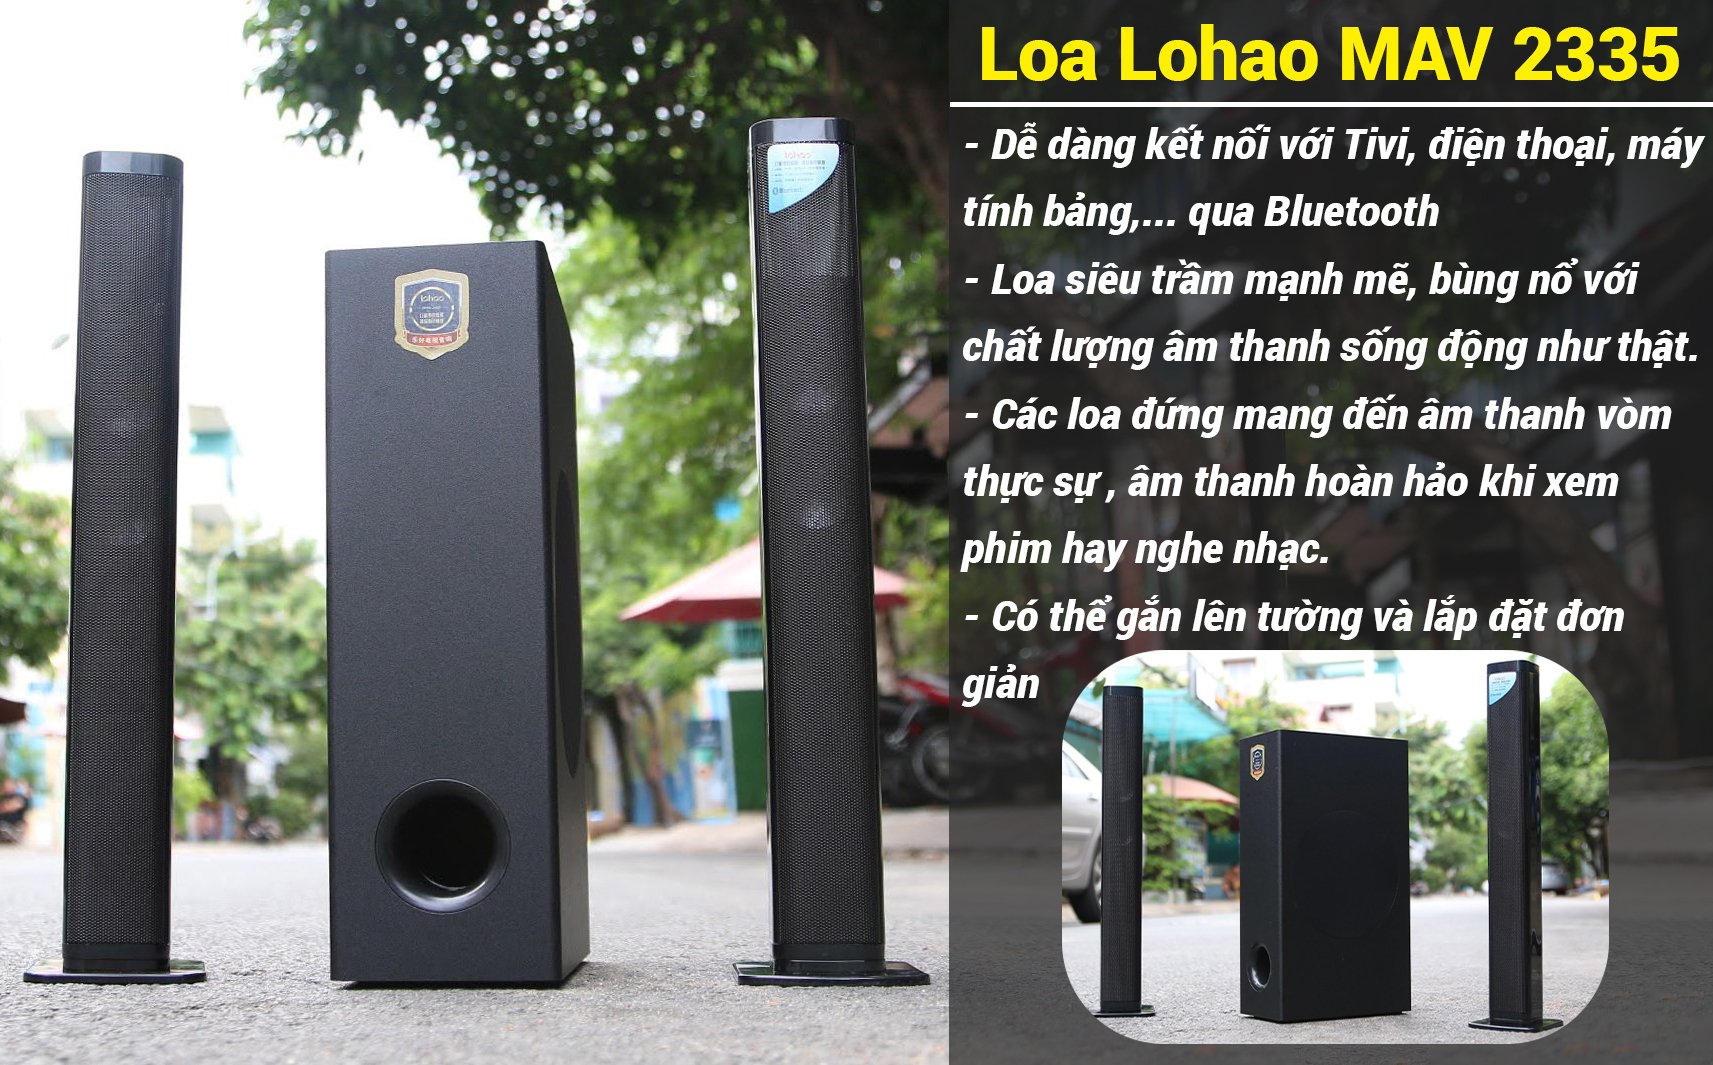 Loa vi tính Lohao MAV 2235 - loa Ti vi soundbar 2.1 âm thanh stereo rạp hát - Kết nối Bluetooth 5.0 - 2 loa vệ tinh kèm sub hơi 2 tấc - Công suất 260W - kèm remote - loa ti vi Soundbar âm thanh 3D - Có thể lắp ghép thành 1 loa dài - Hàng chính hãng